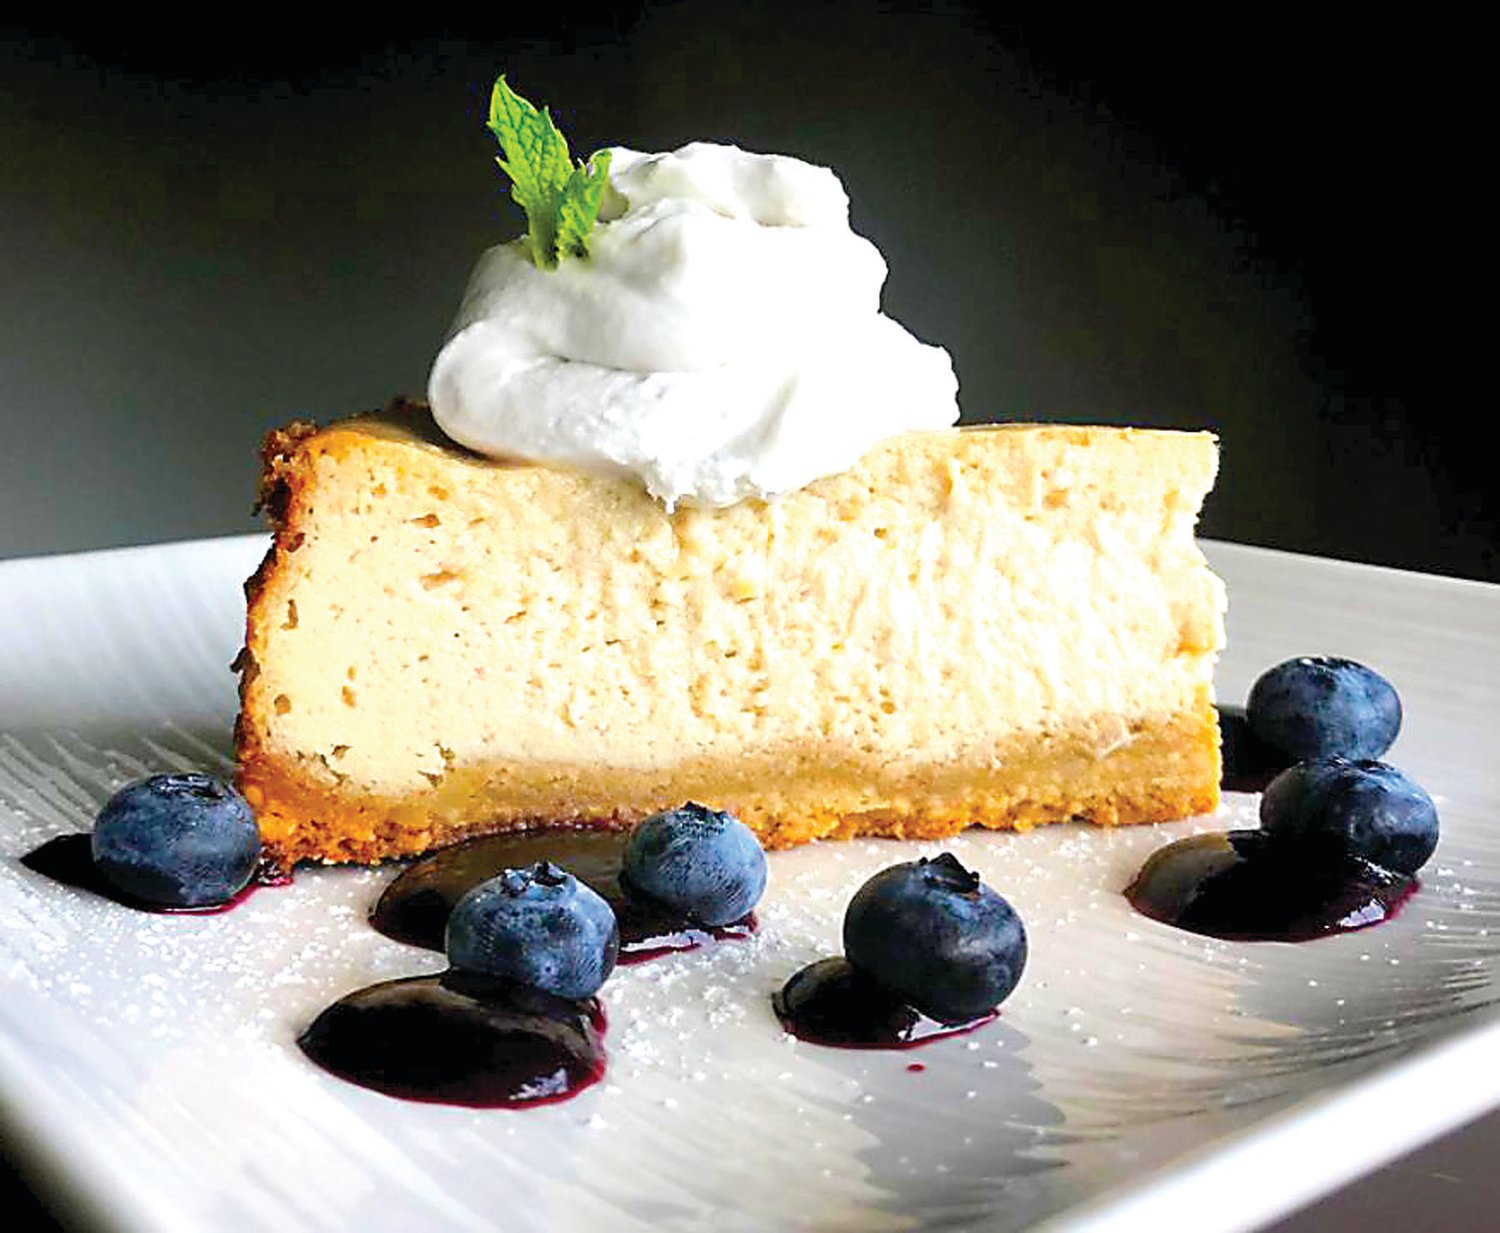 Sprig & Vine’s Cashew Cheesecake is an award-winning dessert.